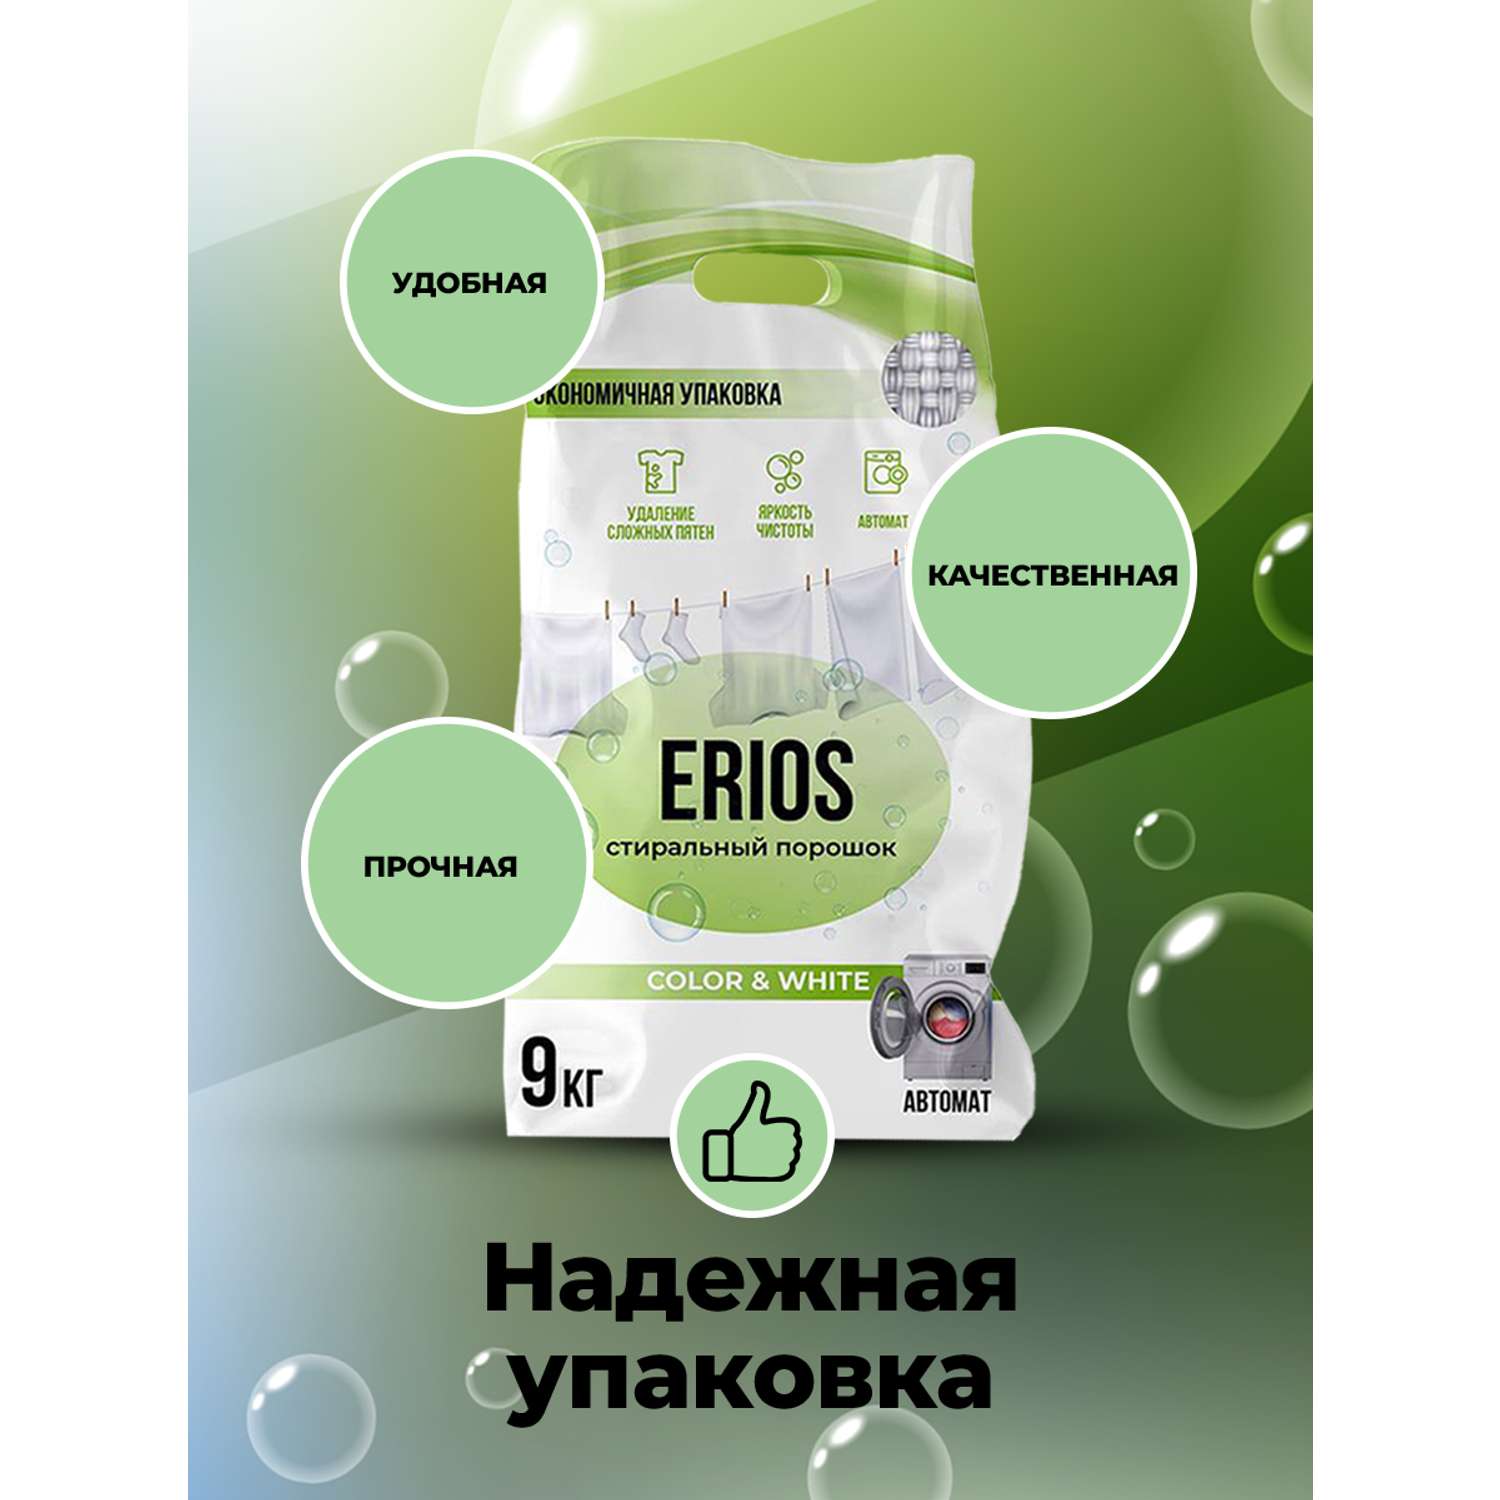 Стиральный порошок ERIOS Универсальный гипоаллергенный для цветного белого белья чувствительной кожи упаковка 9 кг - фото 8